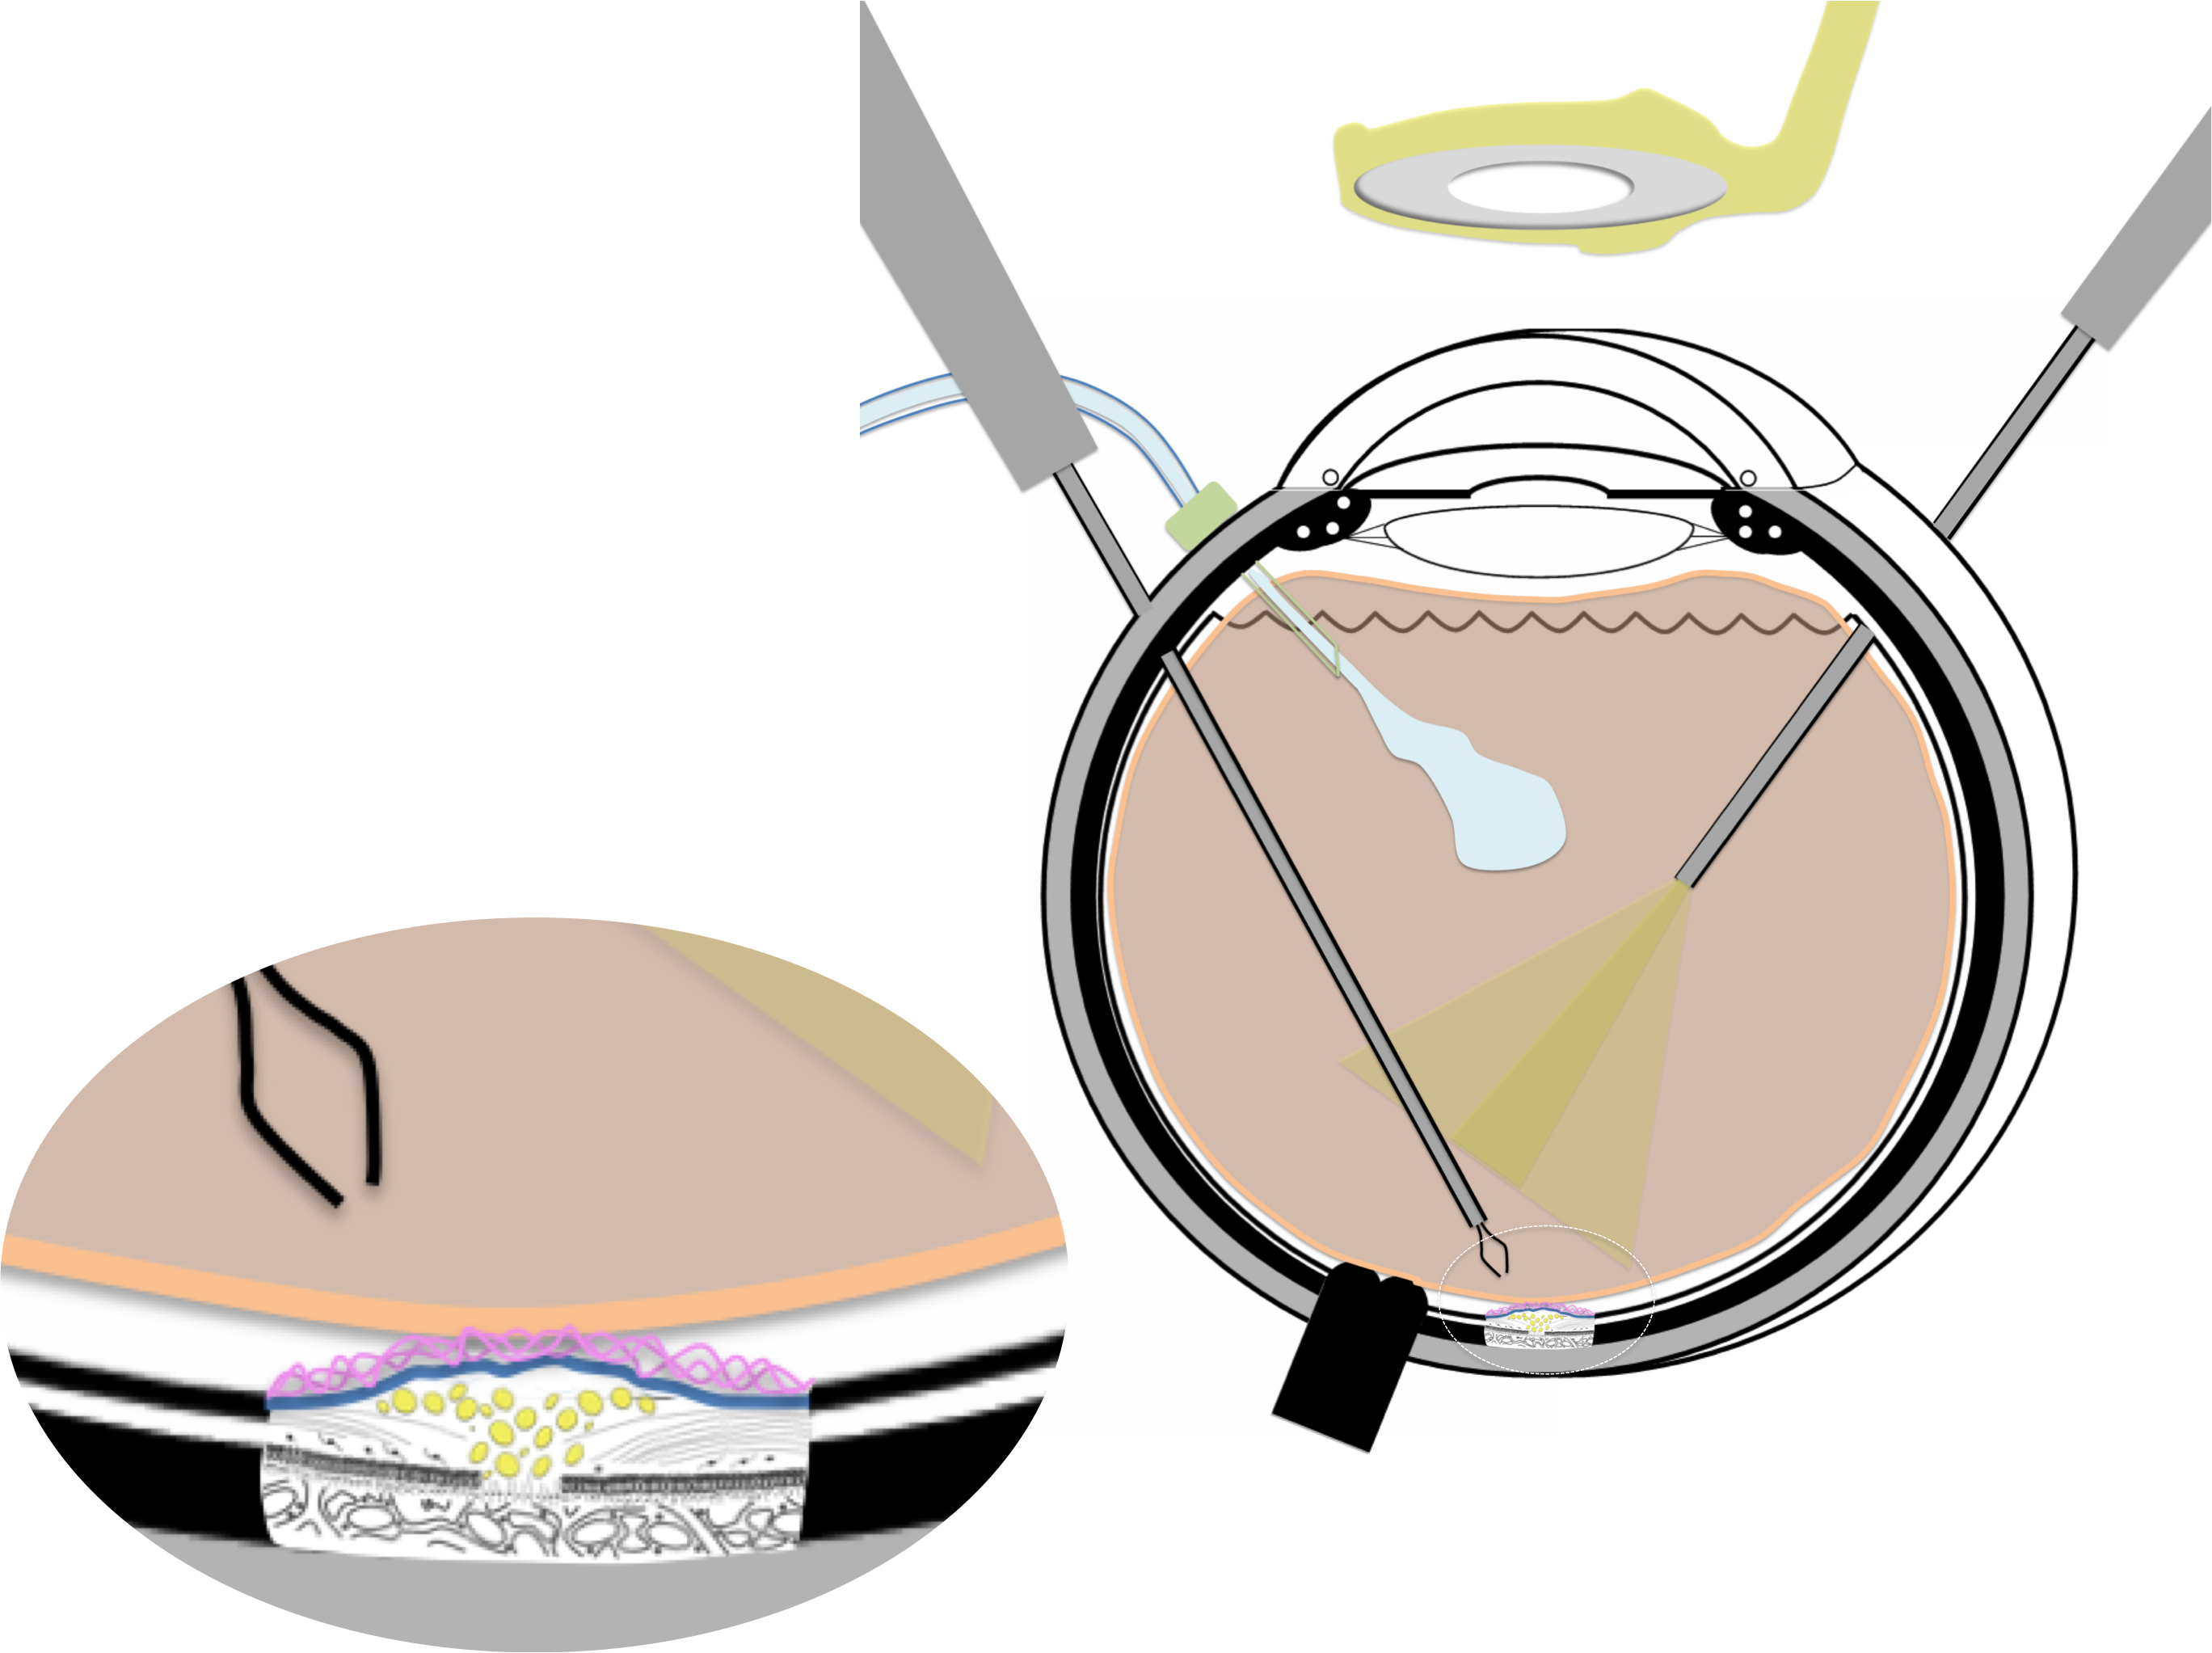 membrane épirétinienne prise en charge chirurgicale par vitrectomie : la micro-pince est introduite dans la cavité vitréenne à l'issue de la vitrectomie